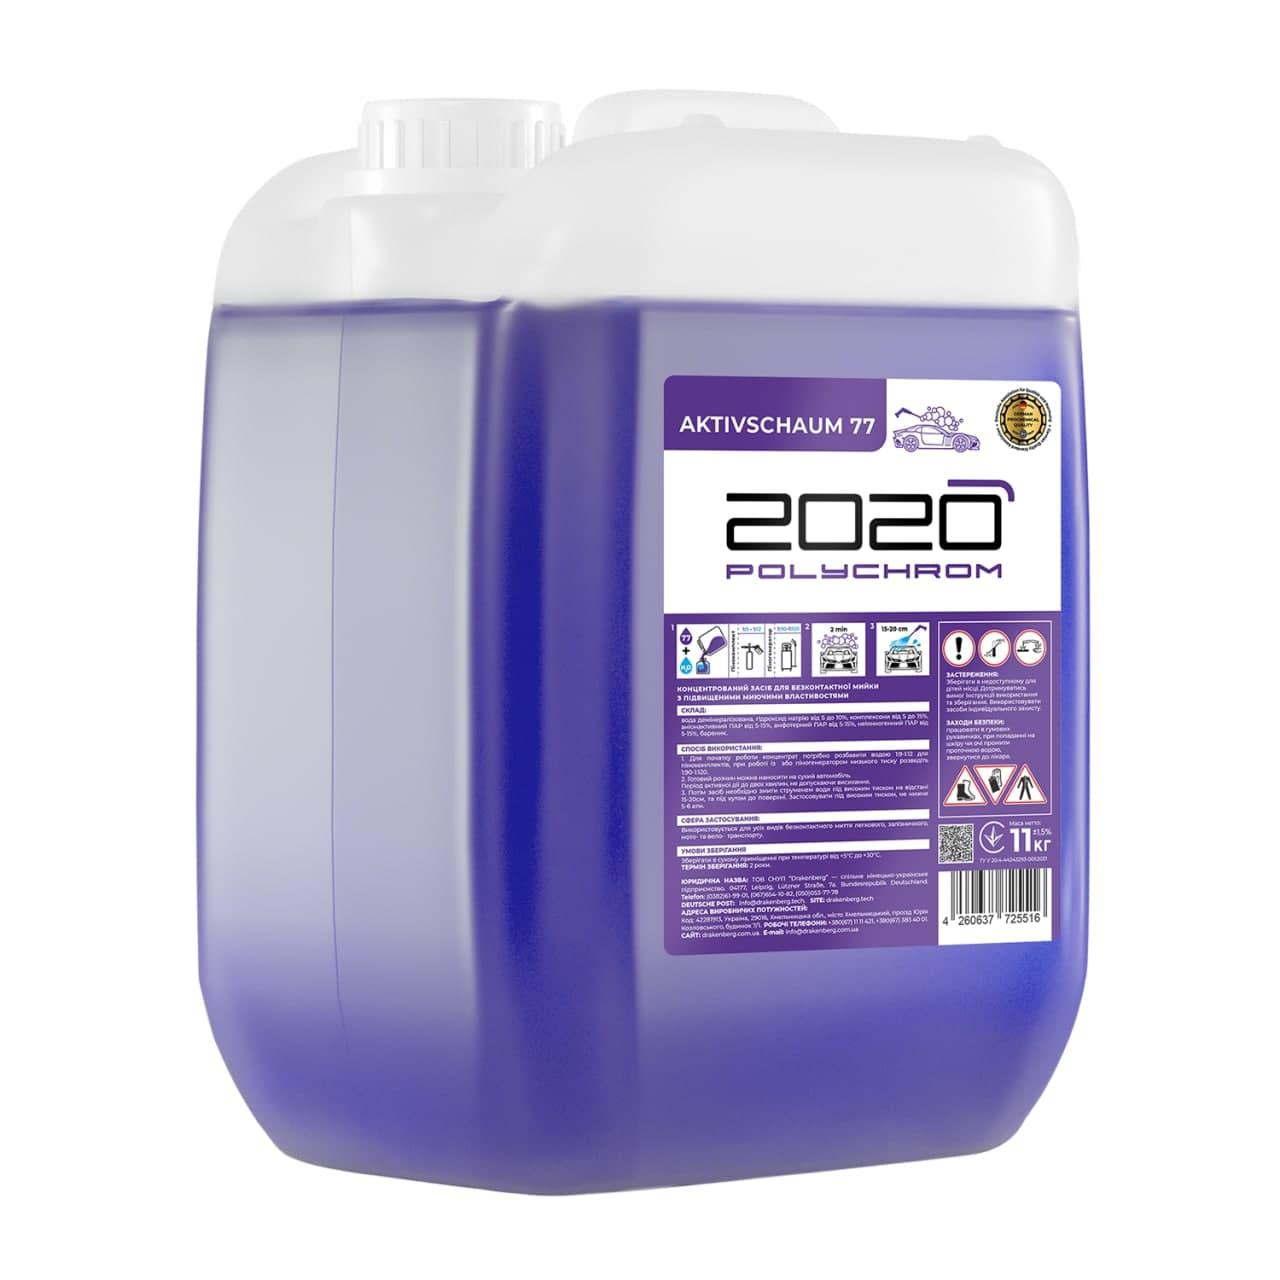 POLYCHROM 2020 Активна піна з підвищеними миючими властивостями “ACTIVE FOAM 77”– 22 кг.Polychrom 2020